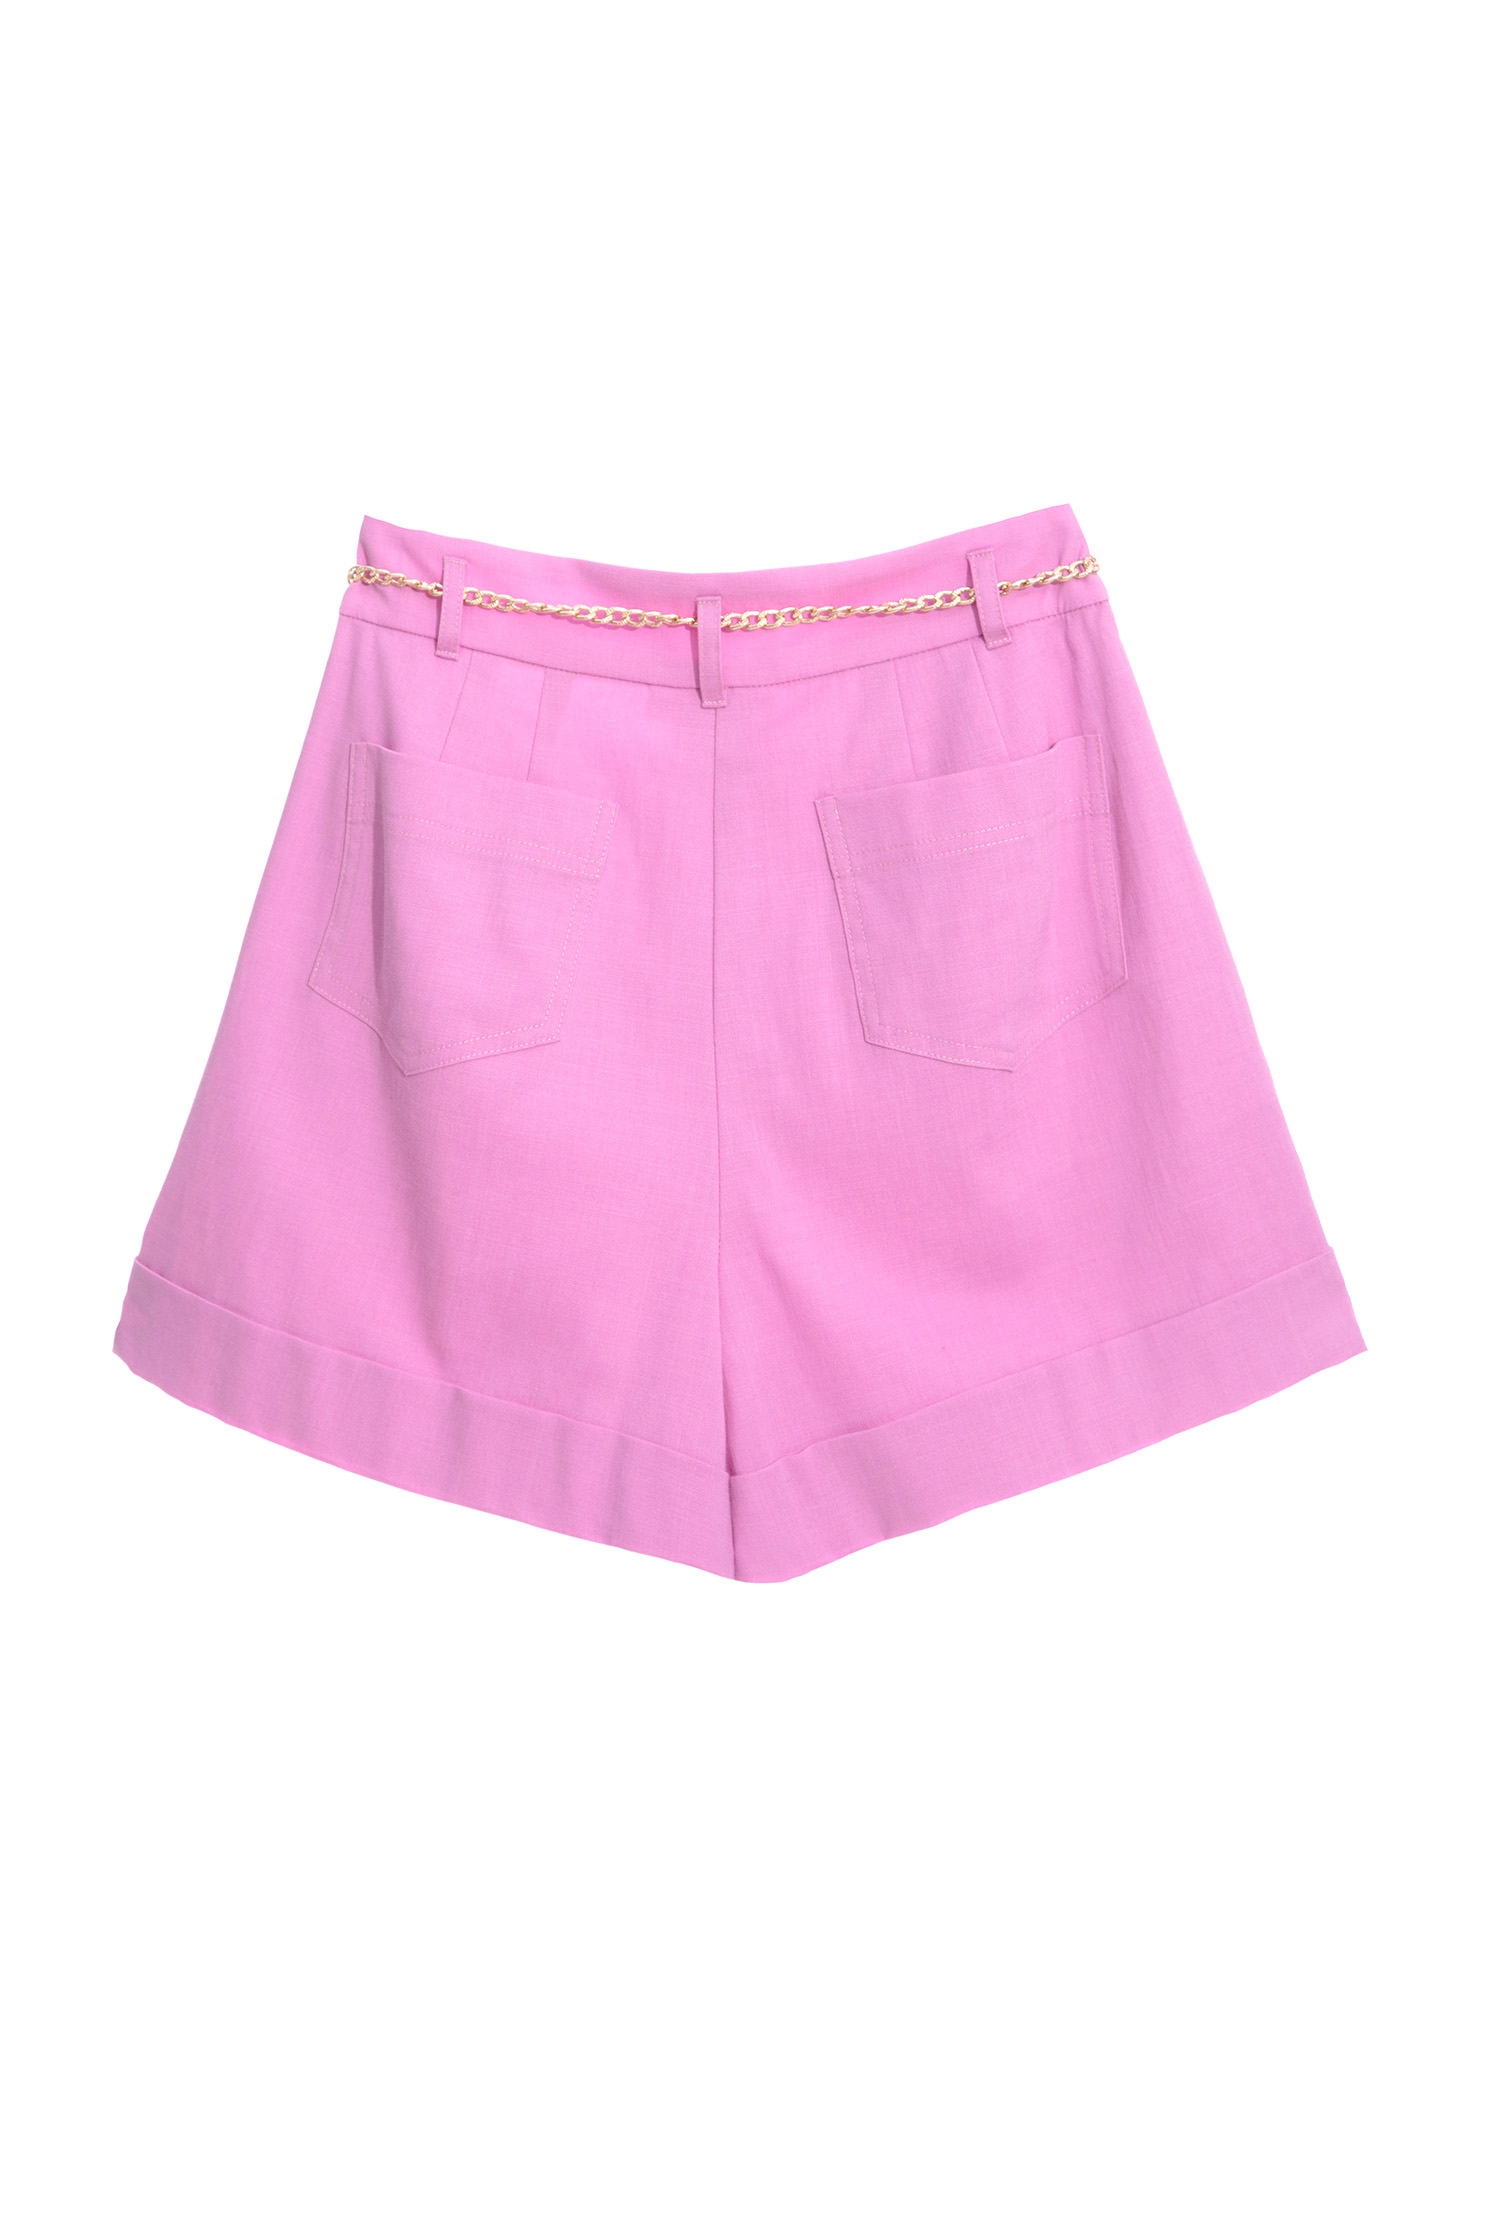 野玫瑰色有腰包短褲野玫瑰色有腰包短褲,春夏穿搭,短褲